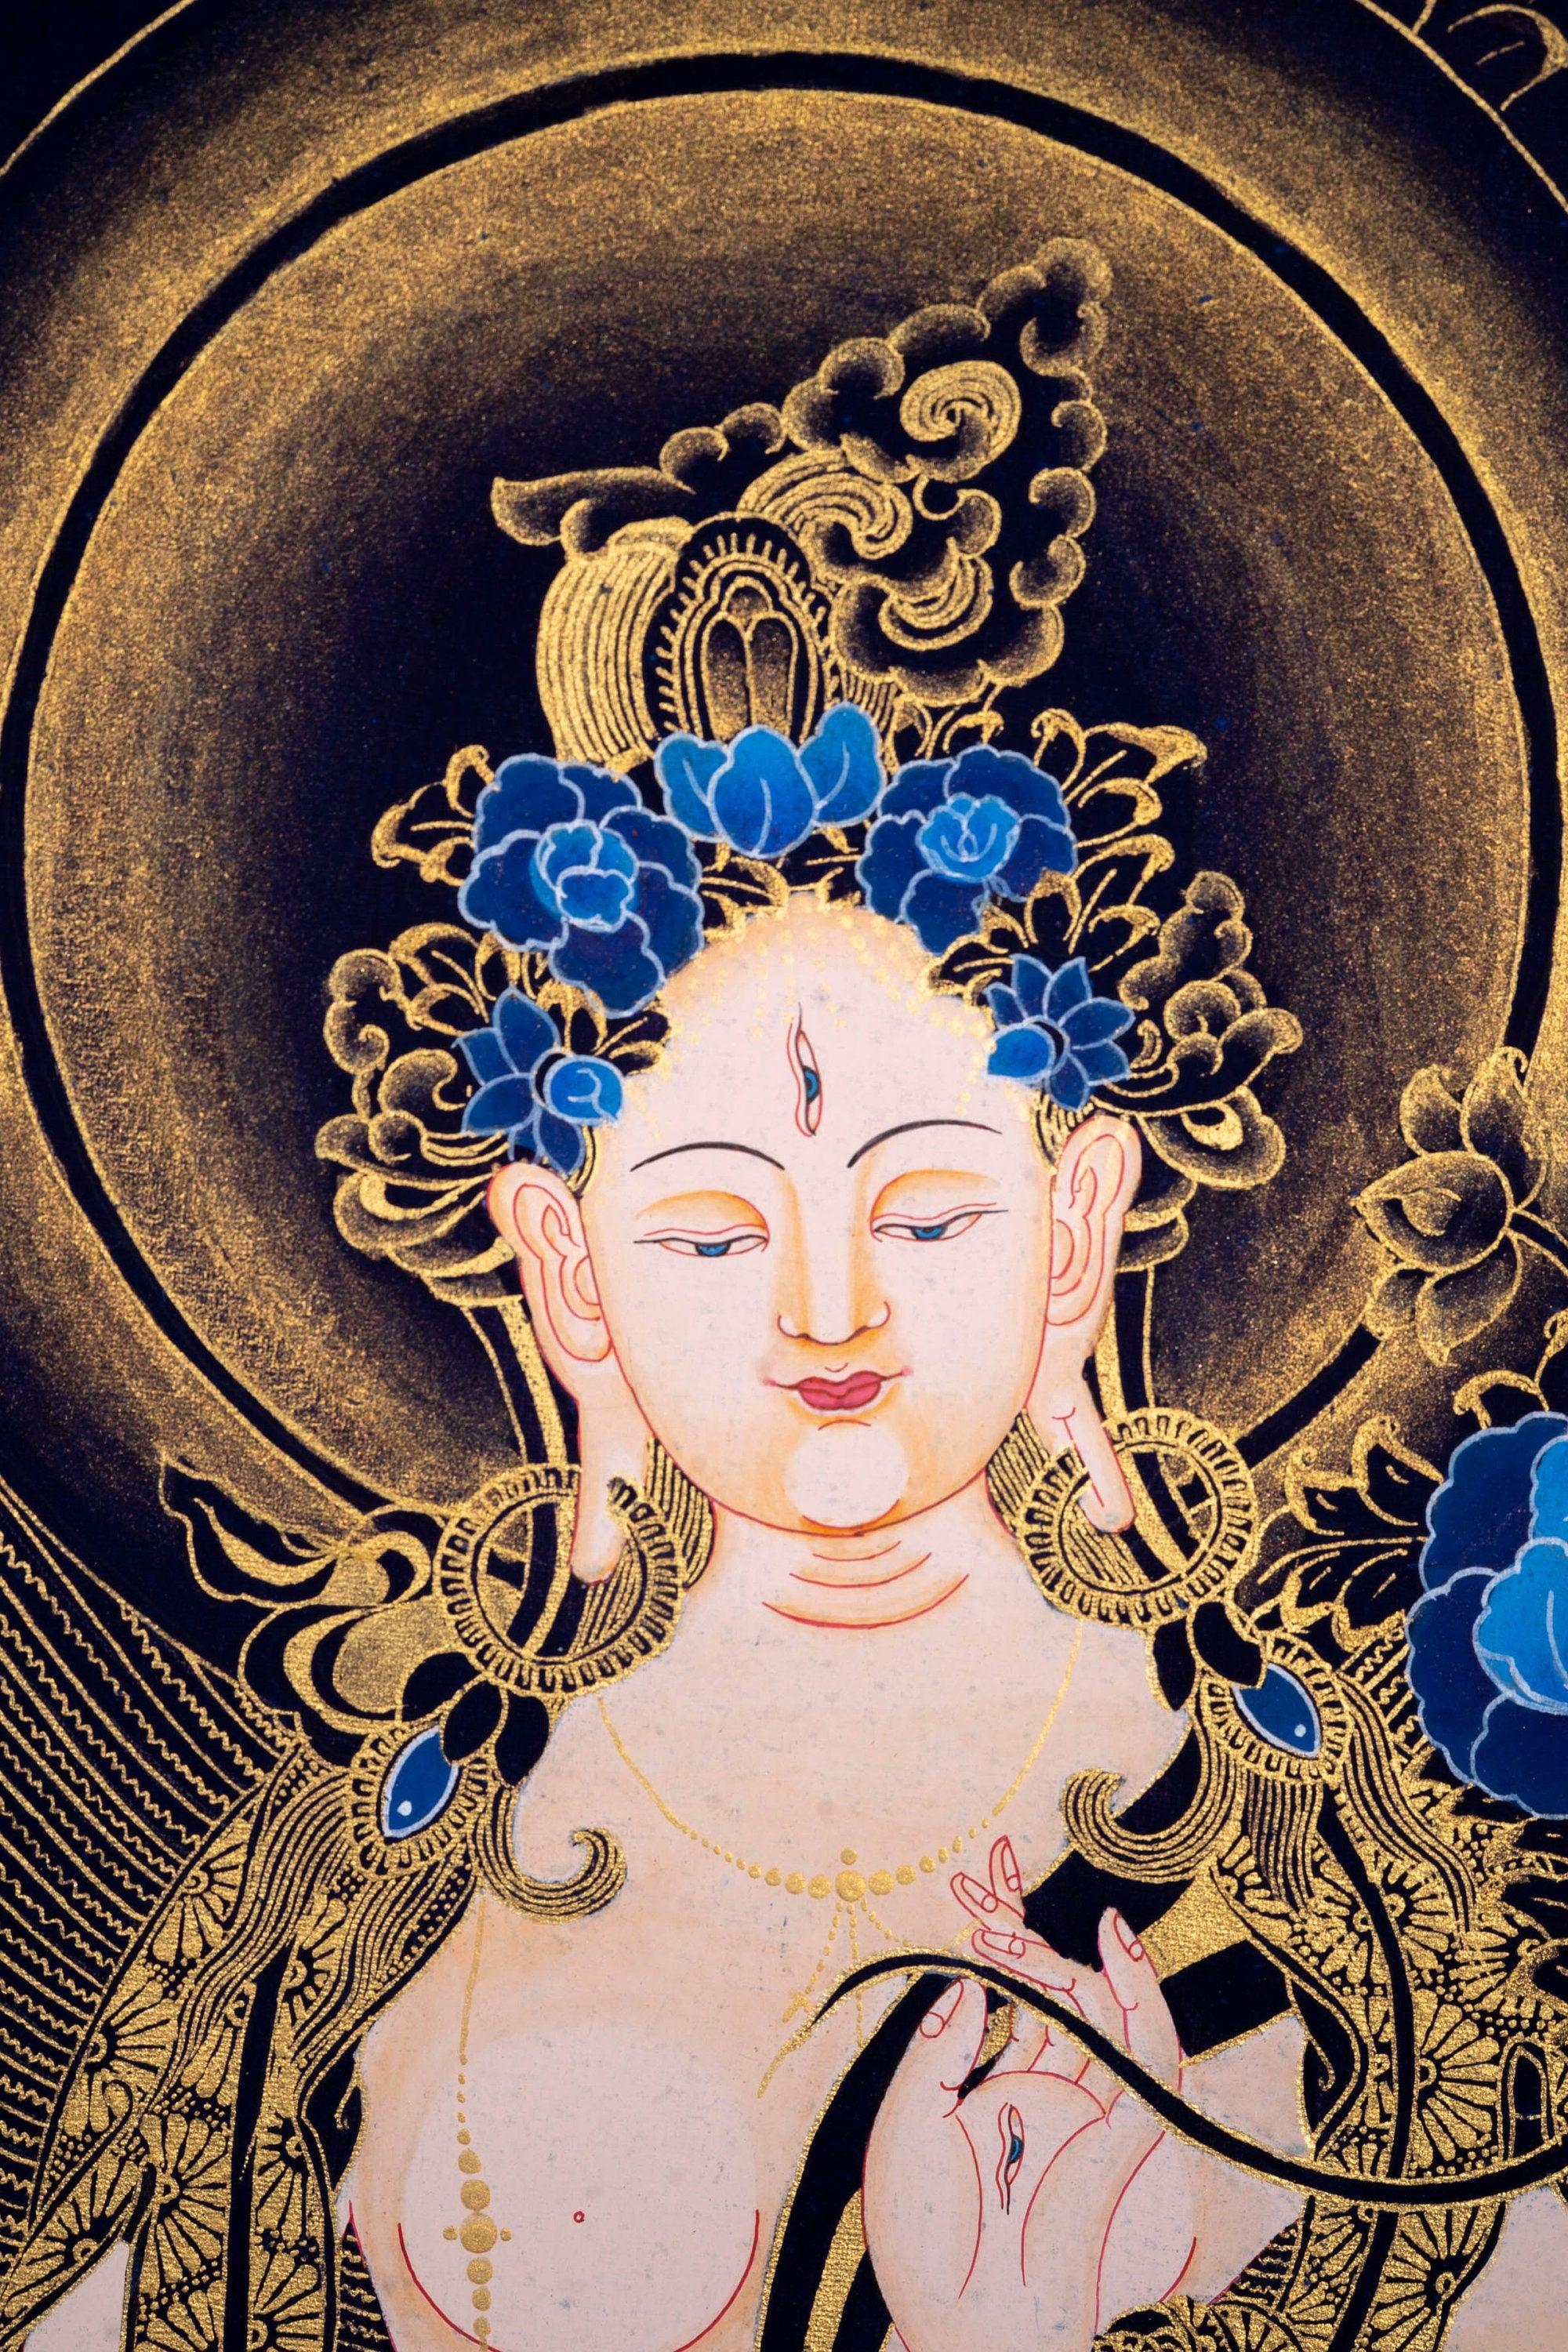 White Tara Thangka Painting Art from Nepal - Himalayas Shop